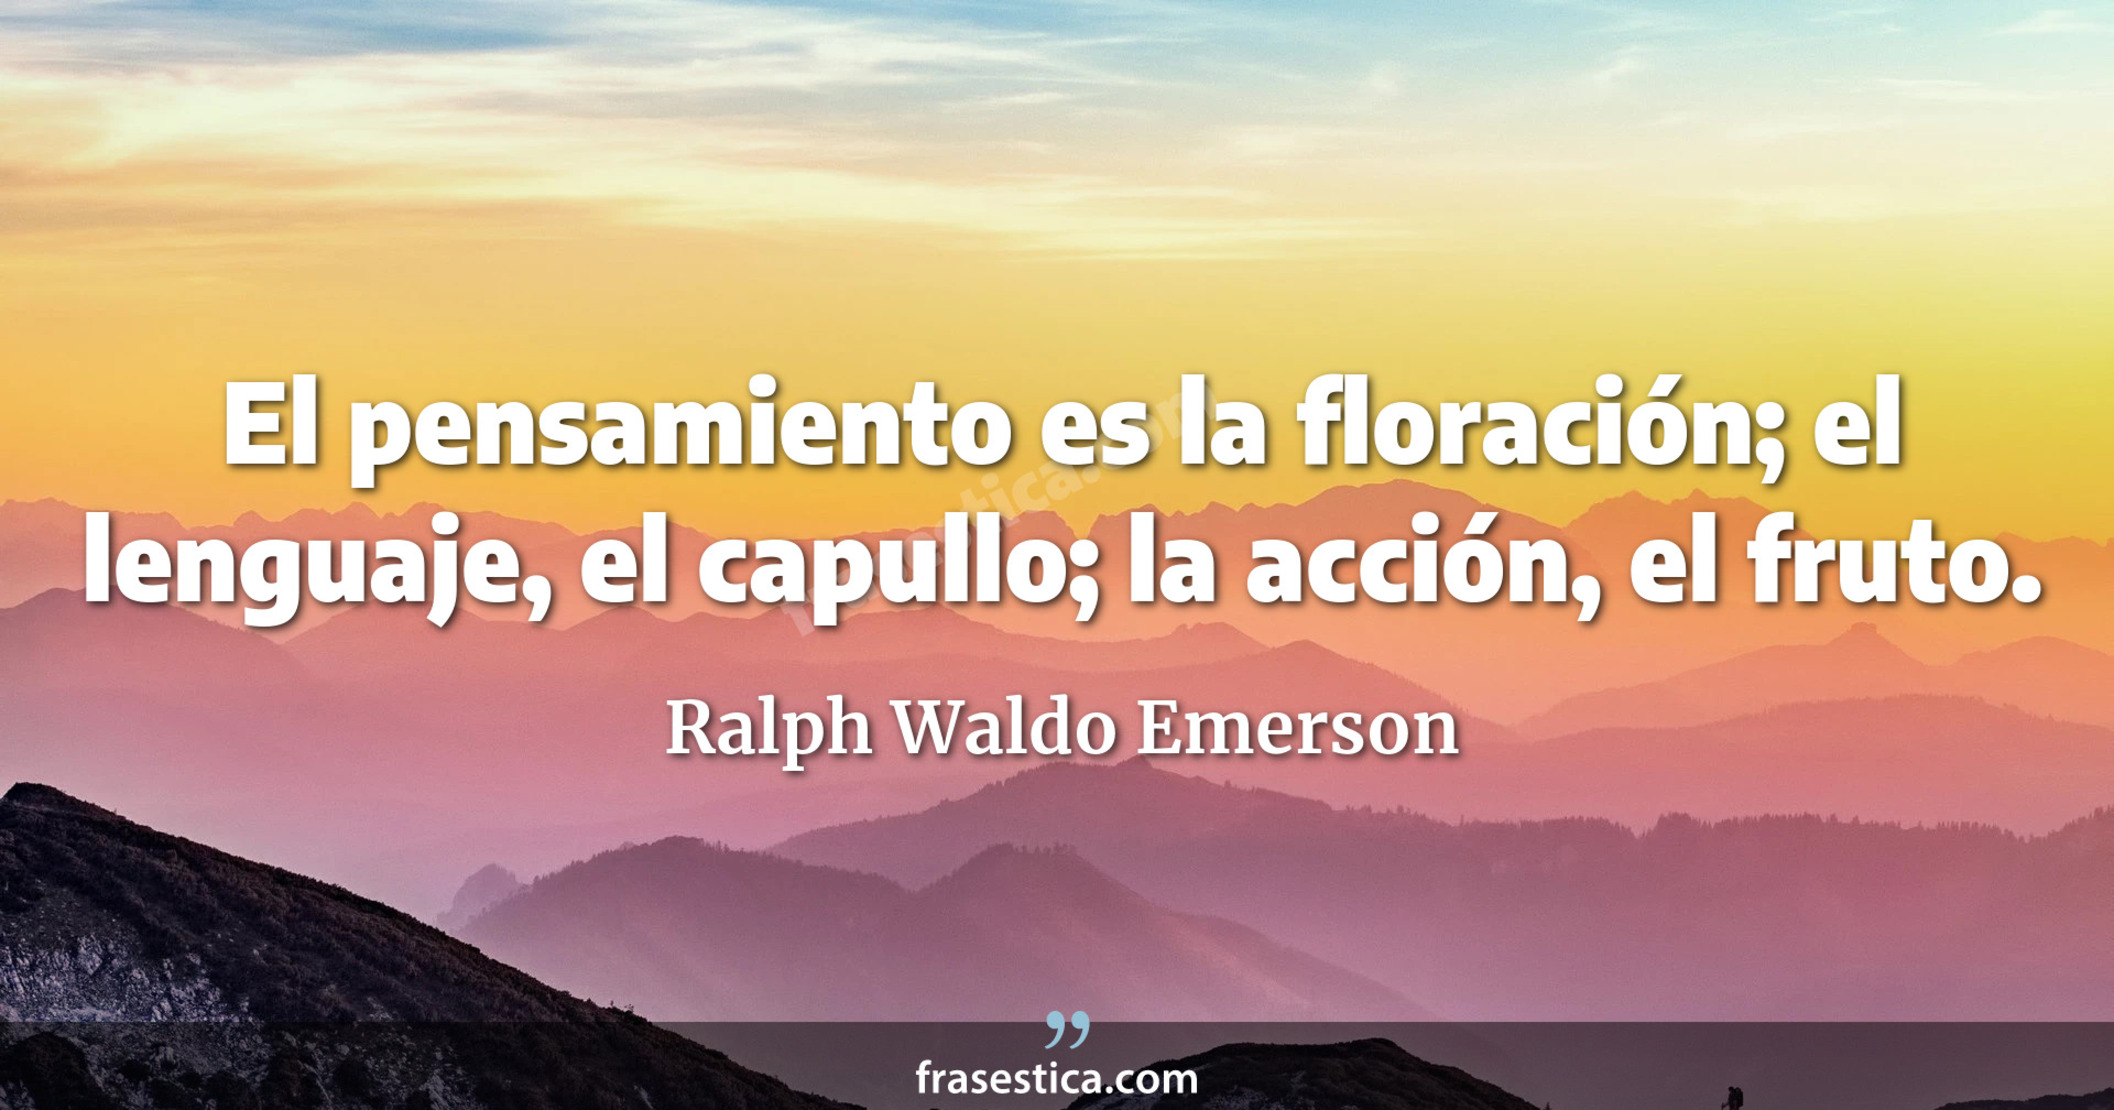 El pensamiento es la floración; el lenguaje, el capullo; la acción, el fruto. - Ralph Waldo Emerson